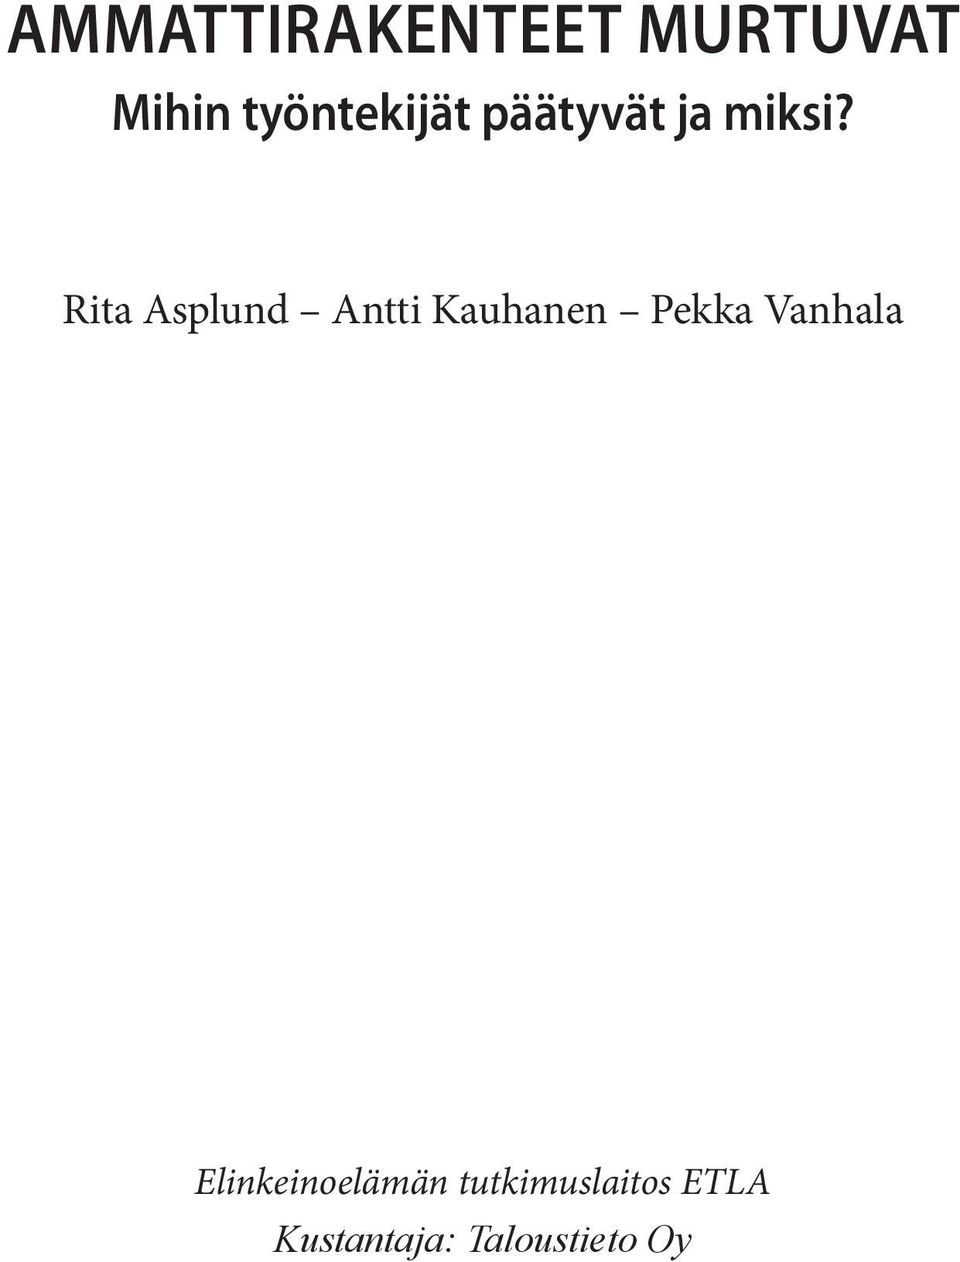 Rita Asplund Antti Kauhanen Pekka Vanhala